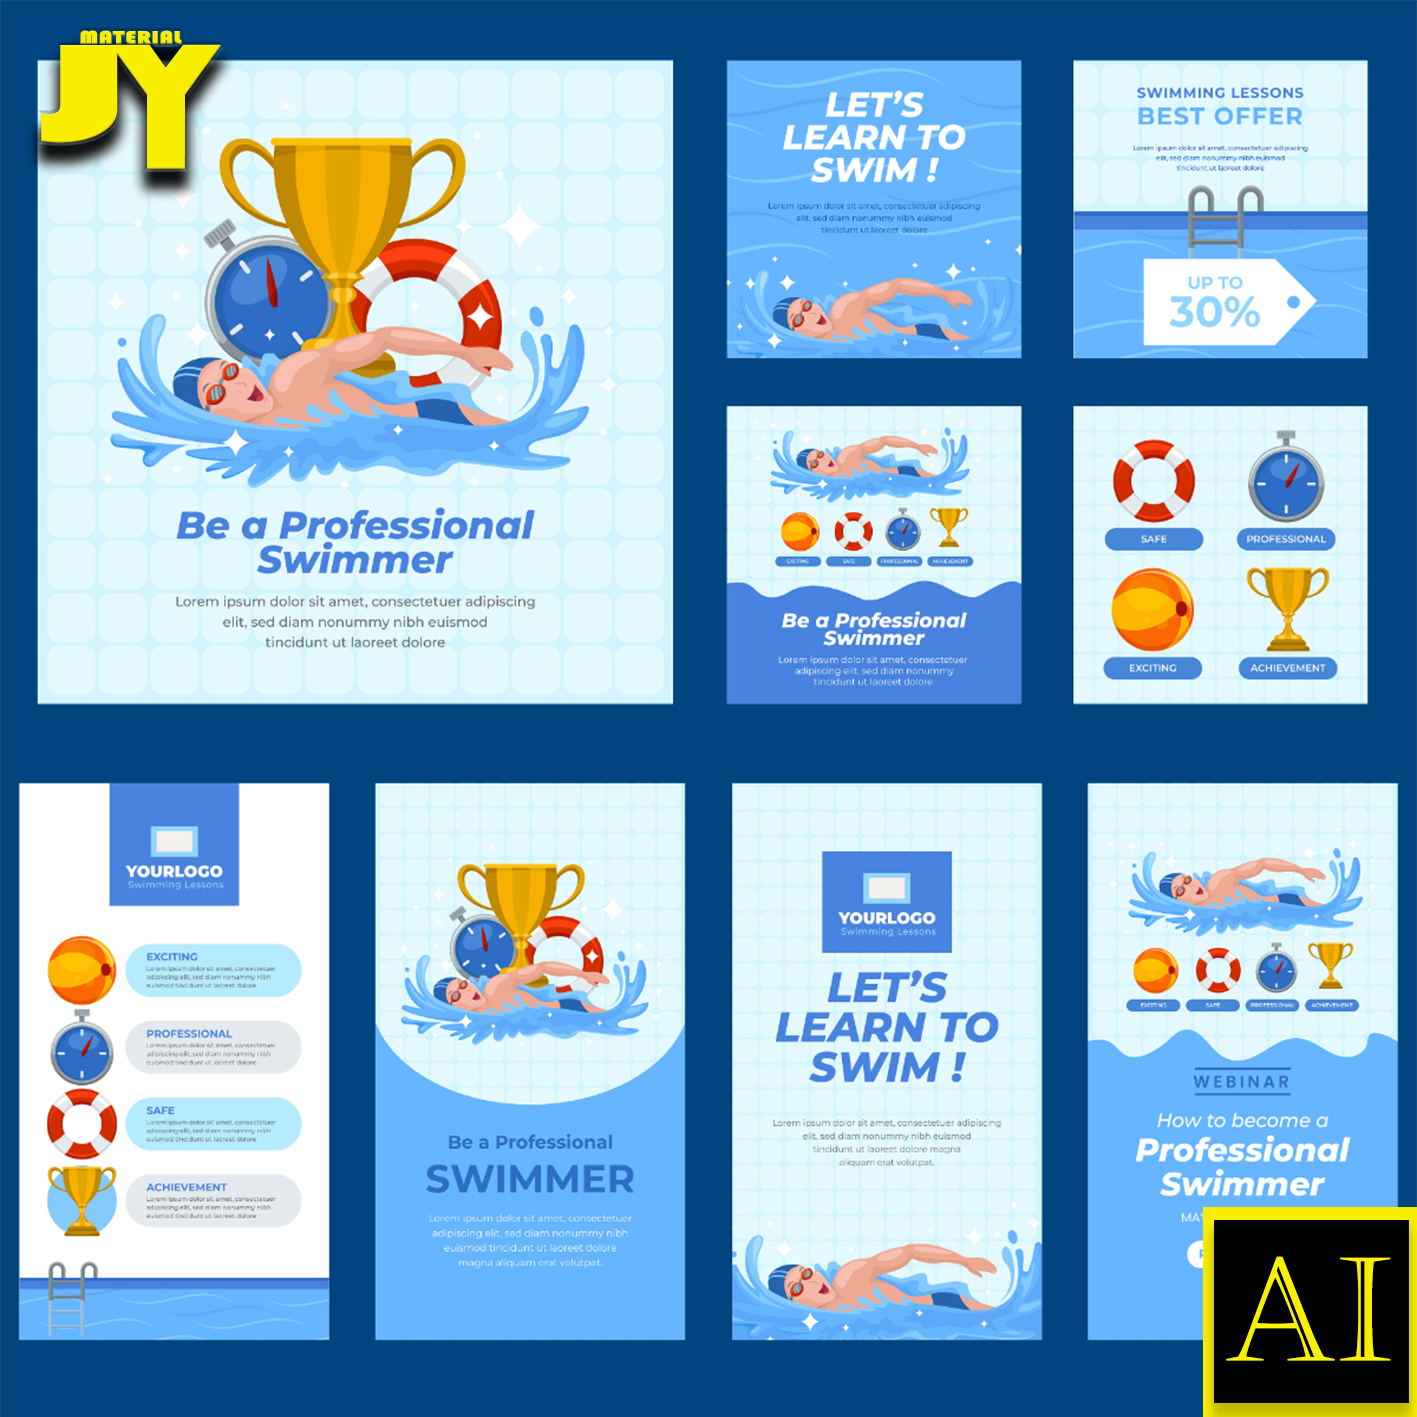 游泳运动员游泳圈游泳池奖杯秒表游泳比赛海报插画版式模板AI素材